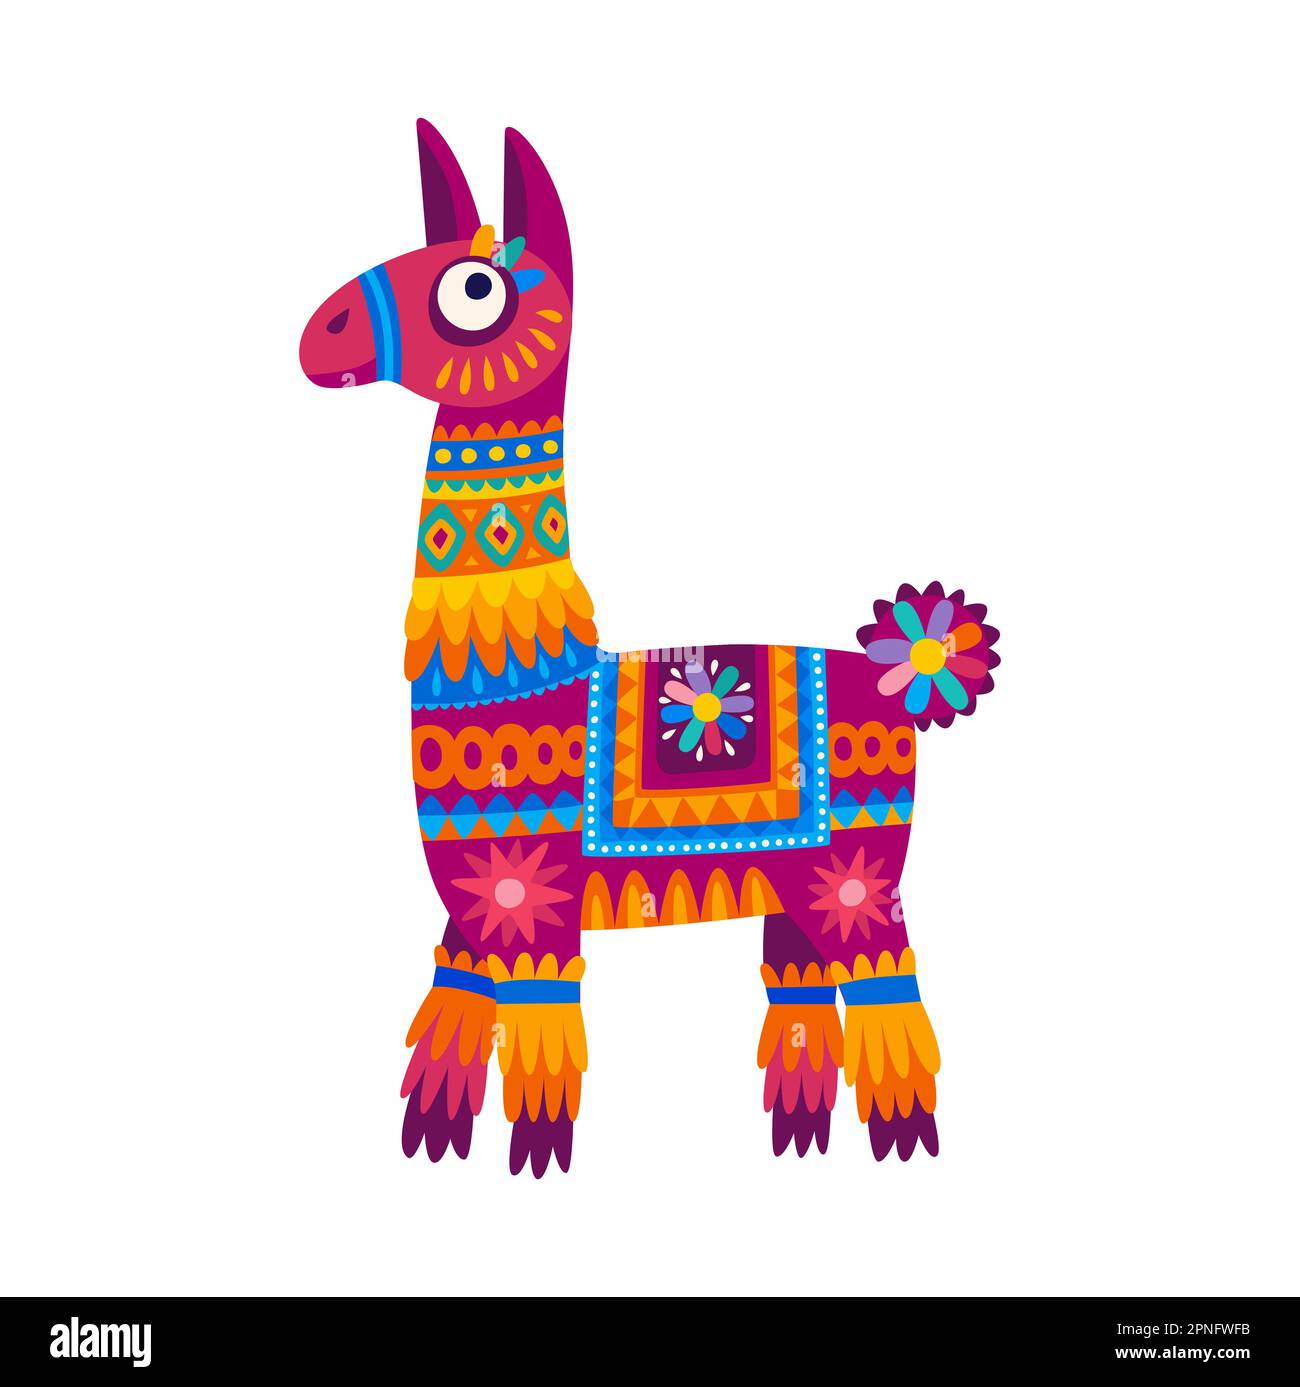 Enfants llama alpaca dans le design ethnique, le personnage de bébé. Drôle d'animal mexicain ou péruvien avec accessoires tribaux, joli lama de fleurs Illustration de Vecteur